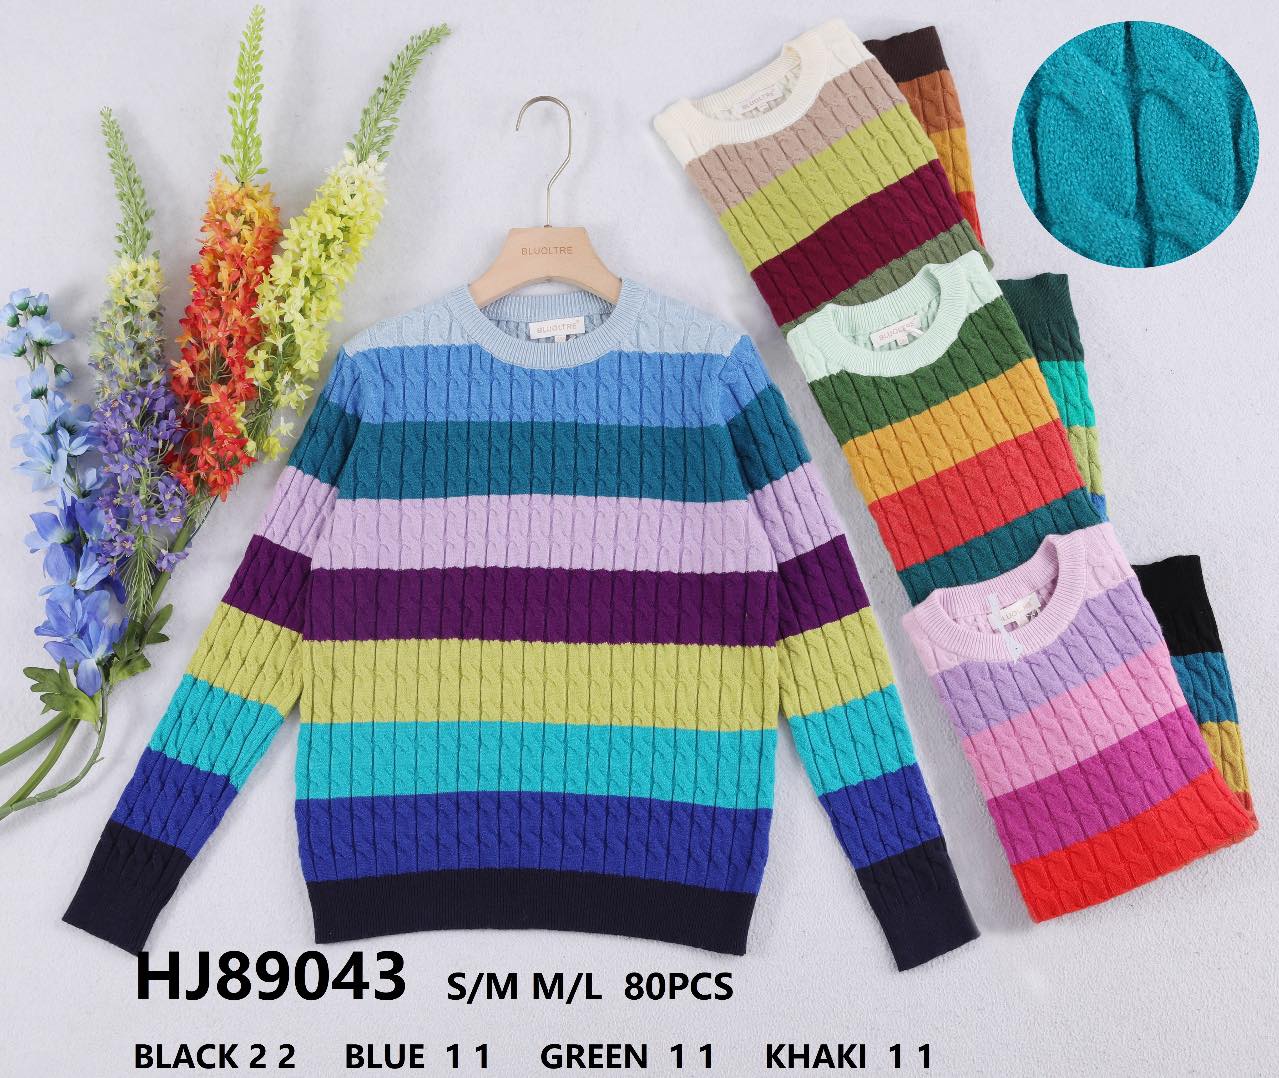 Swetry damska (Francja produkt) Roz S/M.L/XL  Mix kolor, Paszka 10 szt